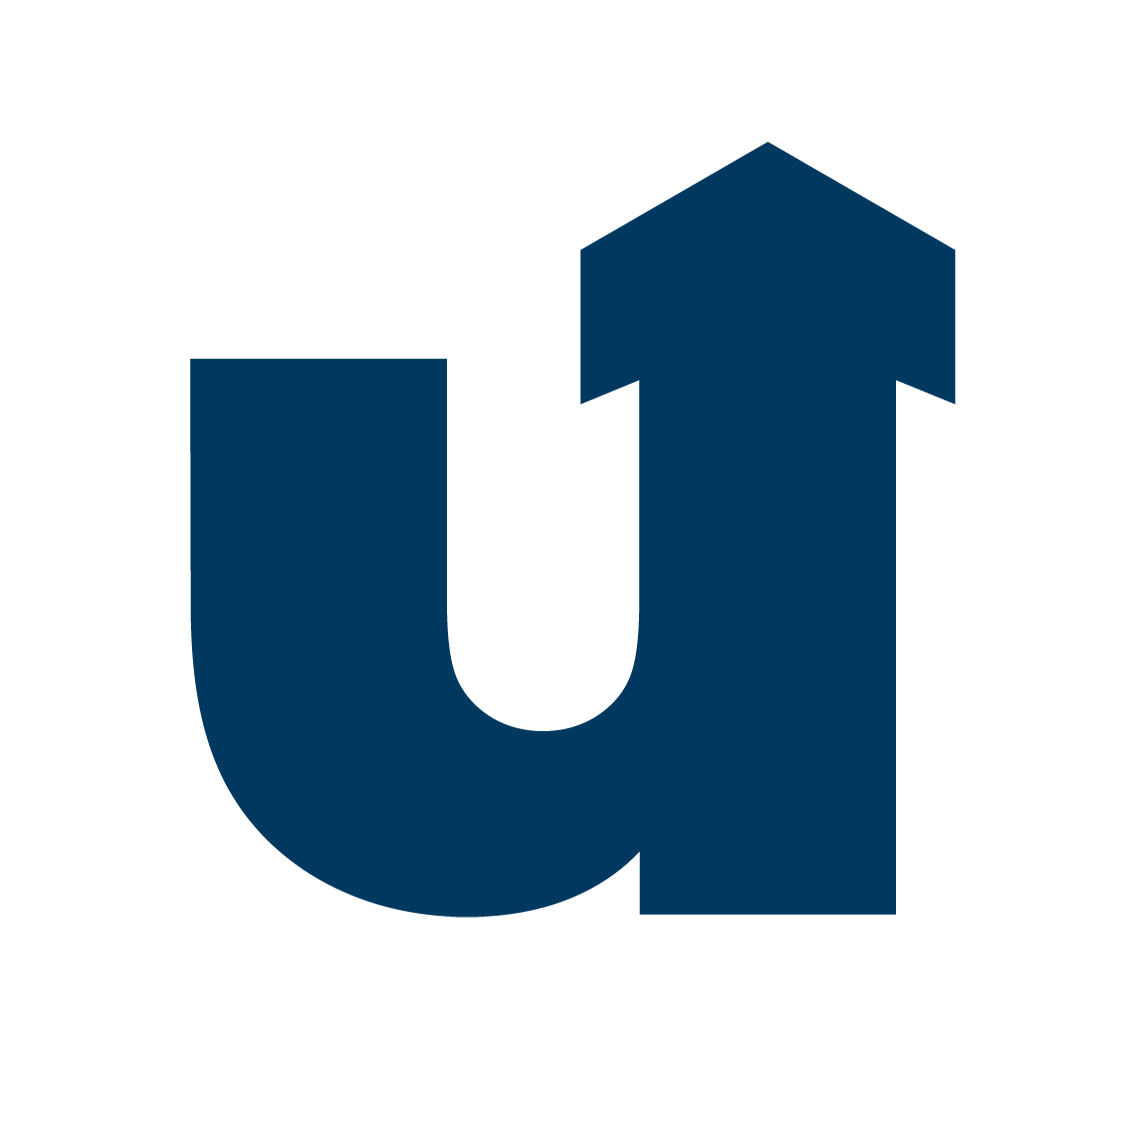 Uni Siegen Logo